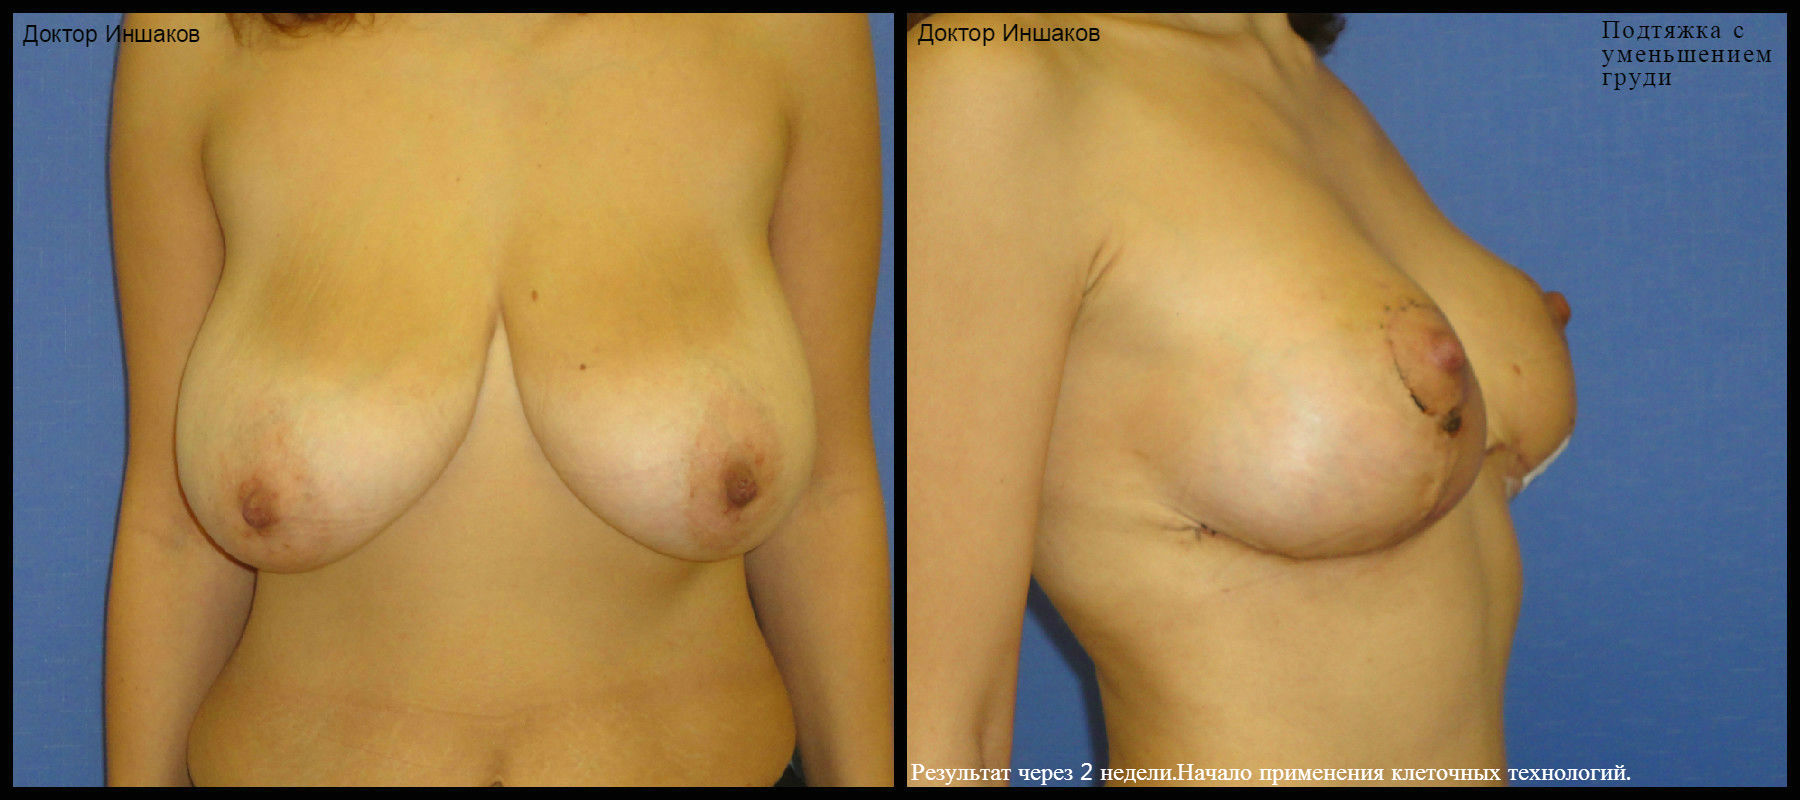 подтяжка груди у женщин фото 8